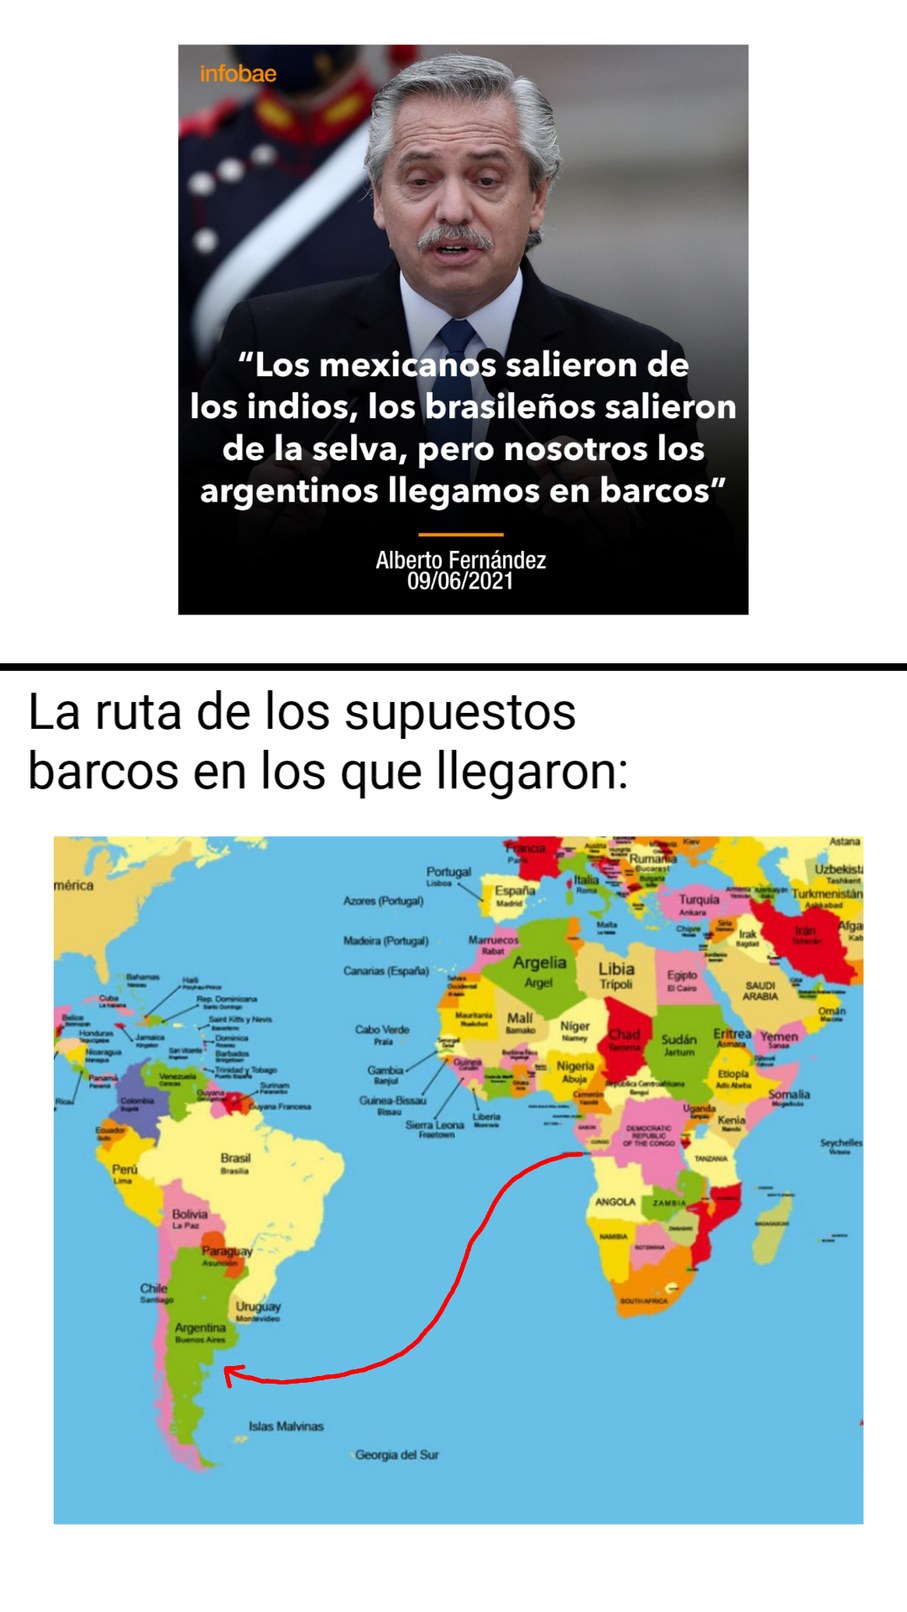 "Pero nosotros los argentinos llegamos en barcos" - meme